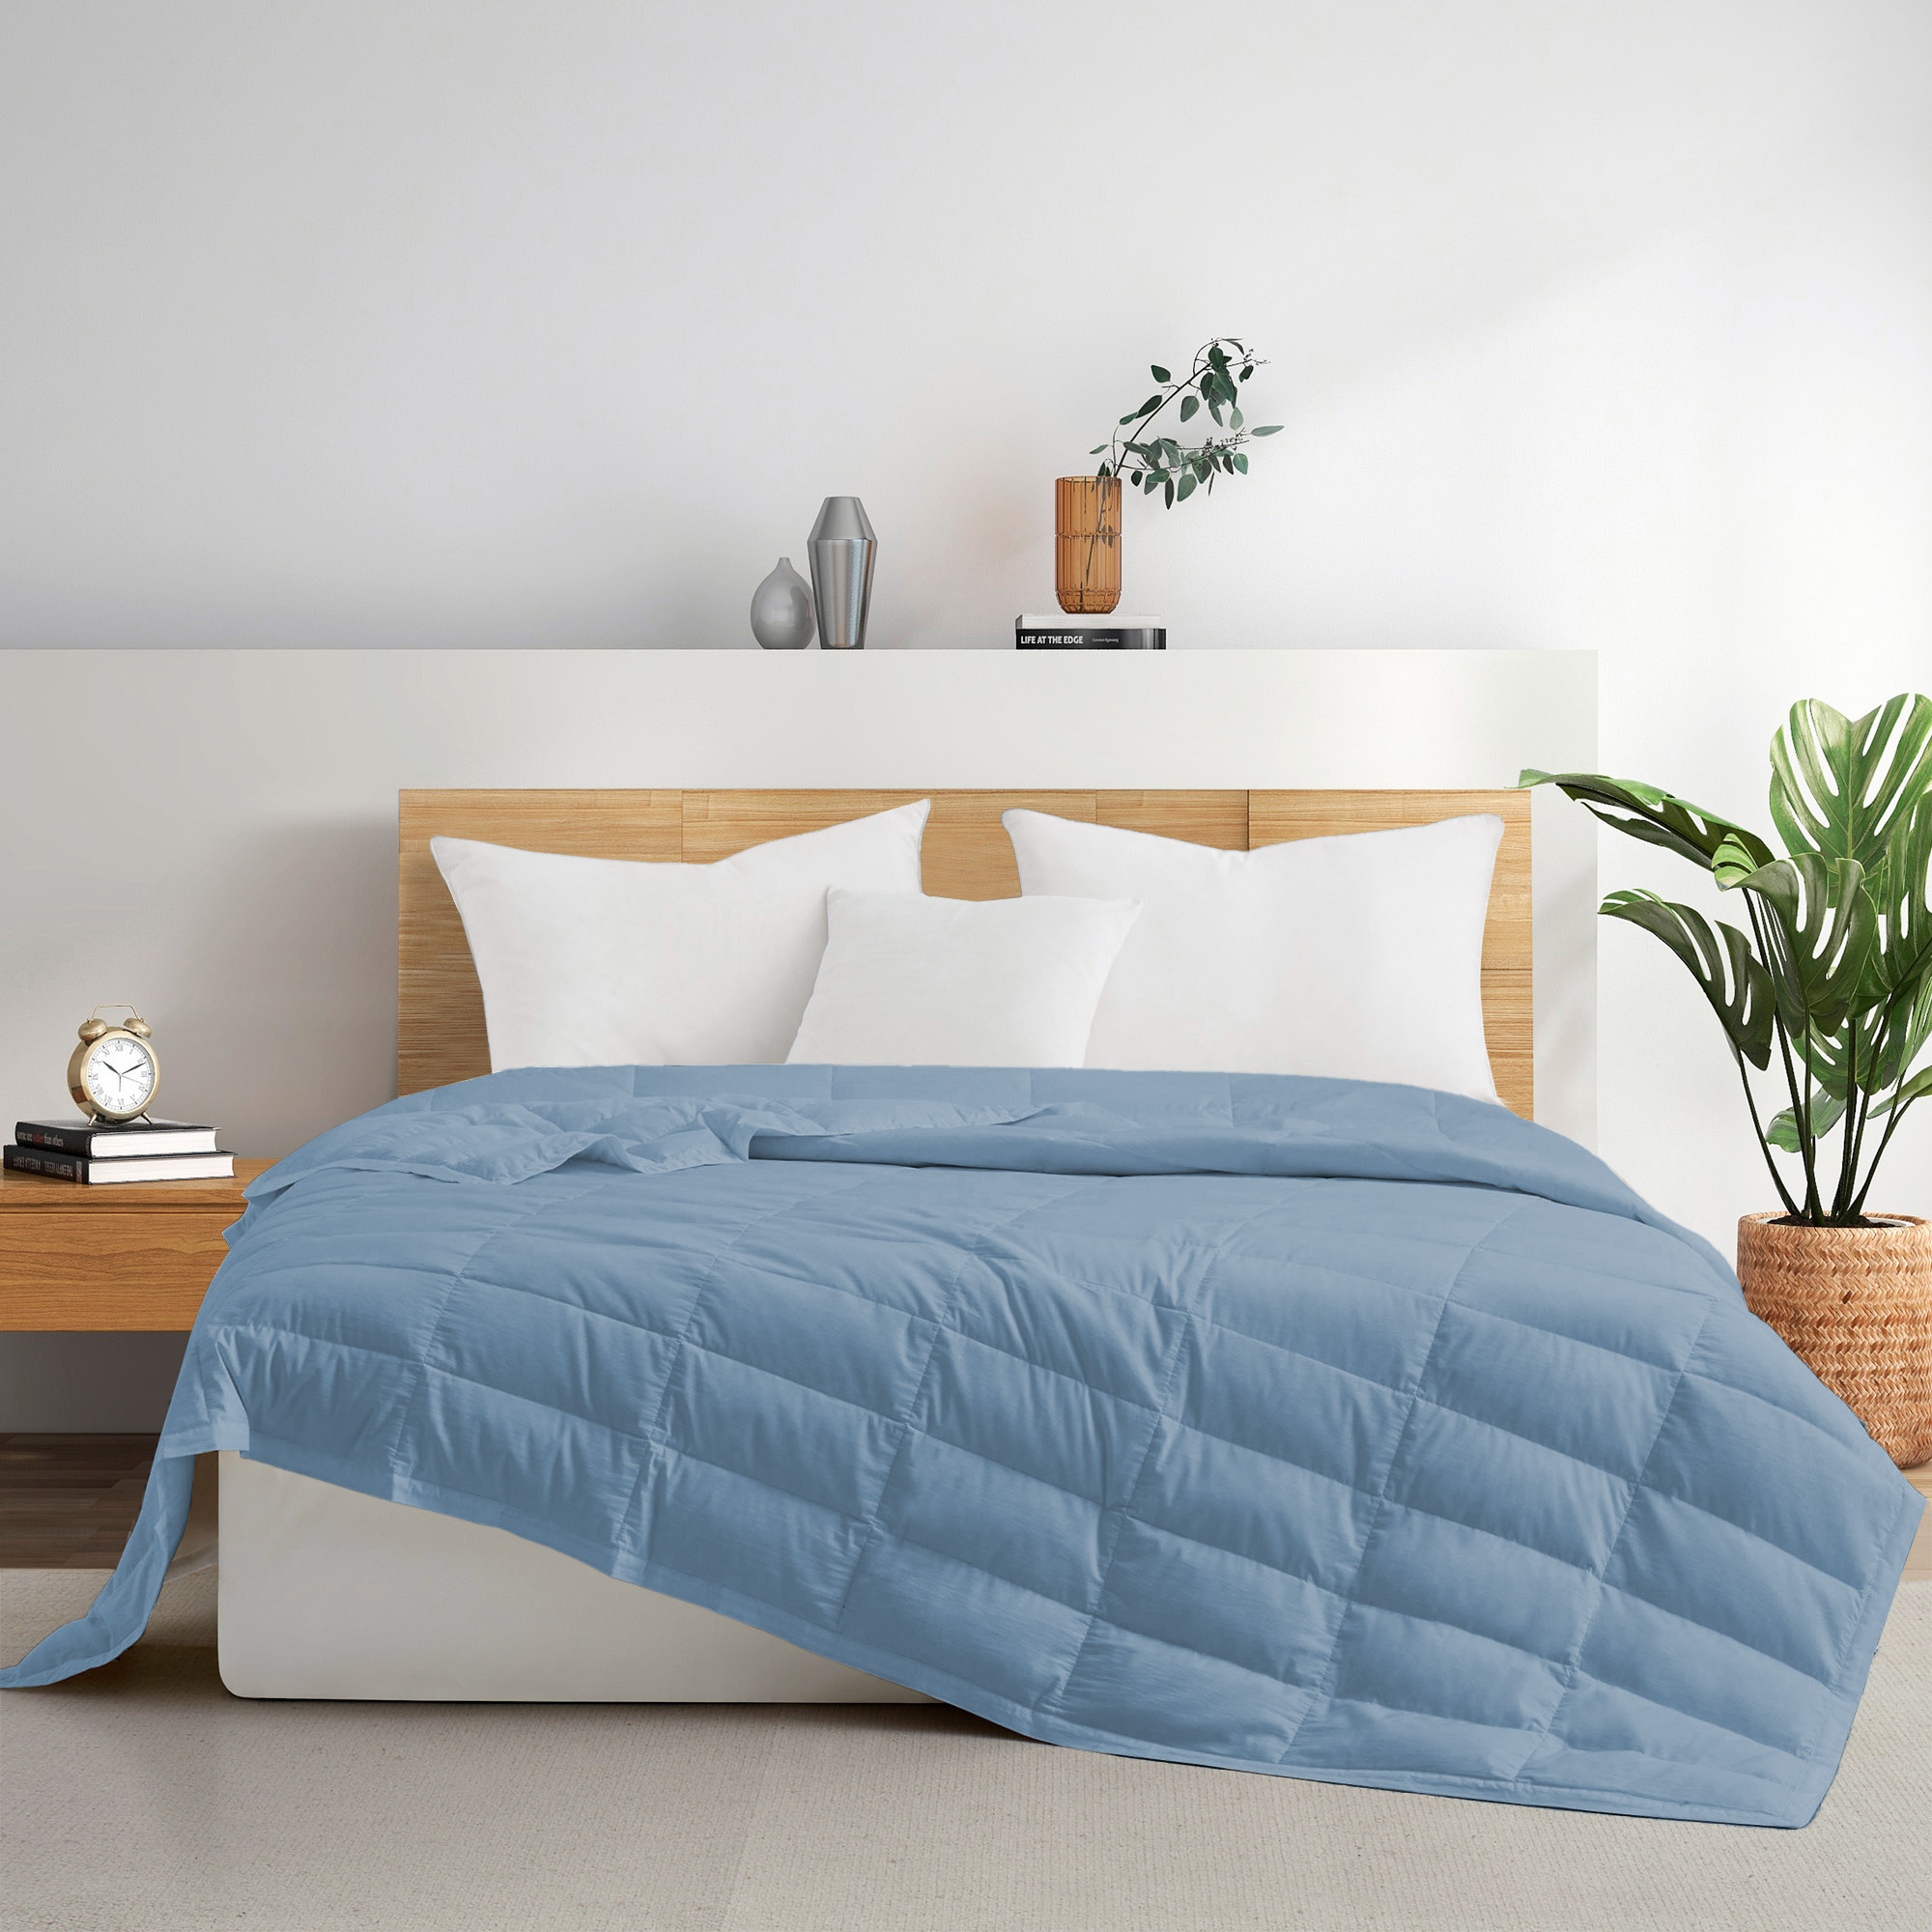 TENCELâ¢ Lyocell Lightweight Cooling Down Blanket-Luxurious Comfort Summer Blanket - Starlight Blue, Full/Queen